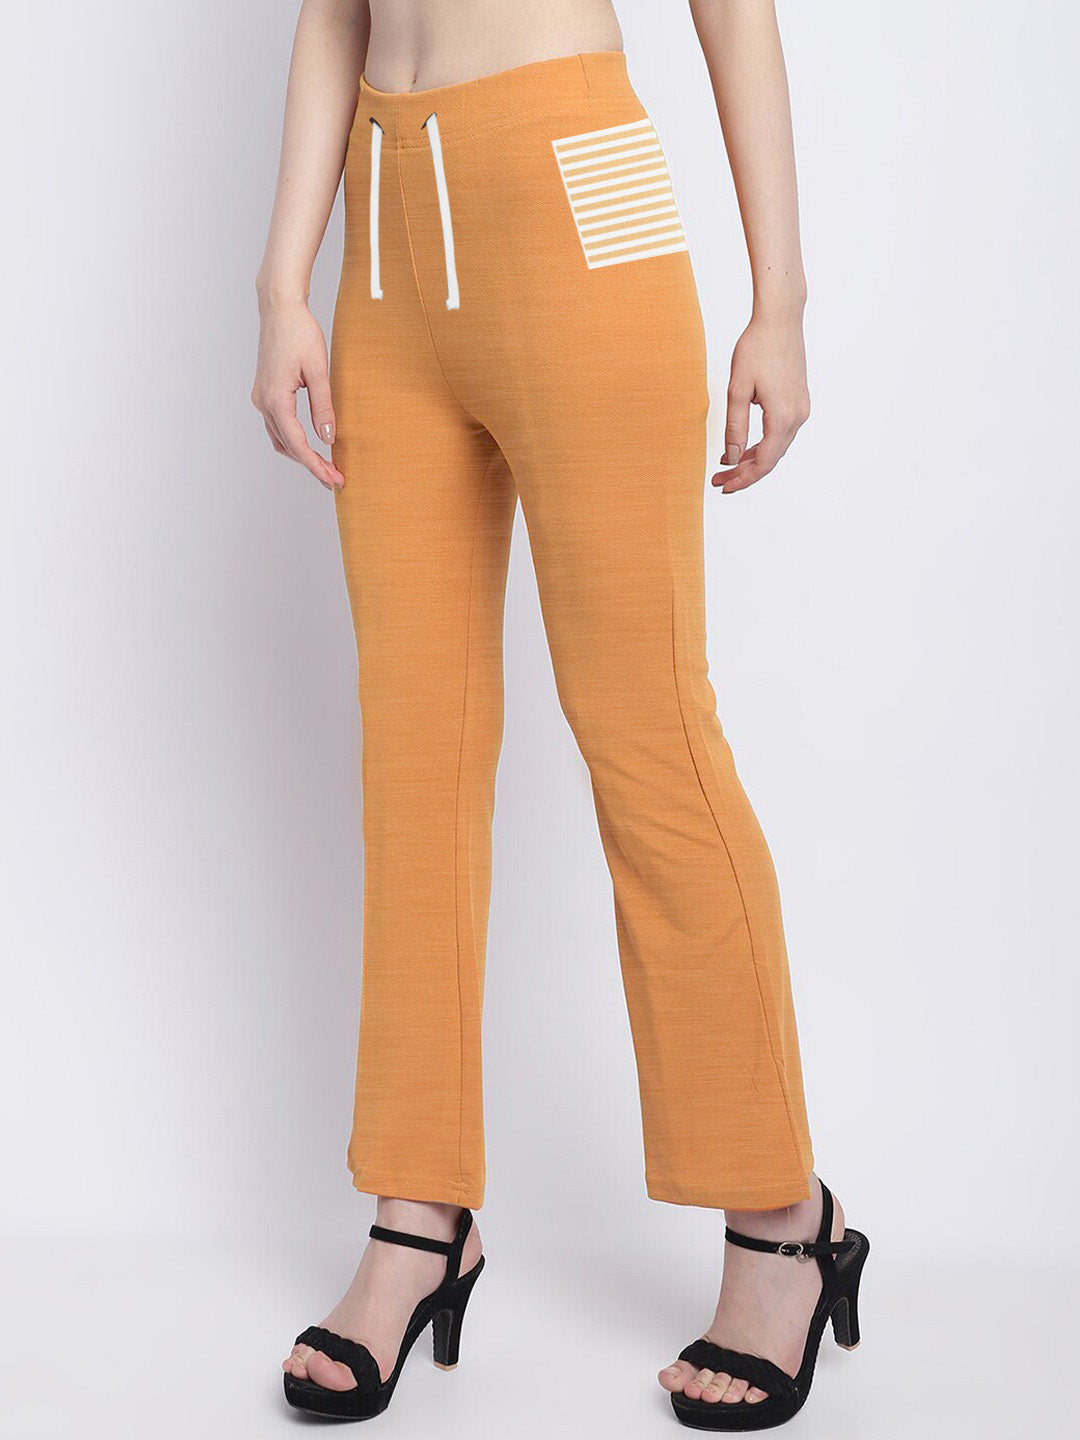 Next Terry Fleece Bell Bottom Trouser For Ladies Orange Melange-SP1250